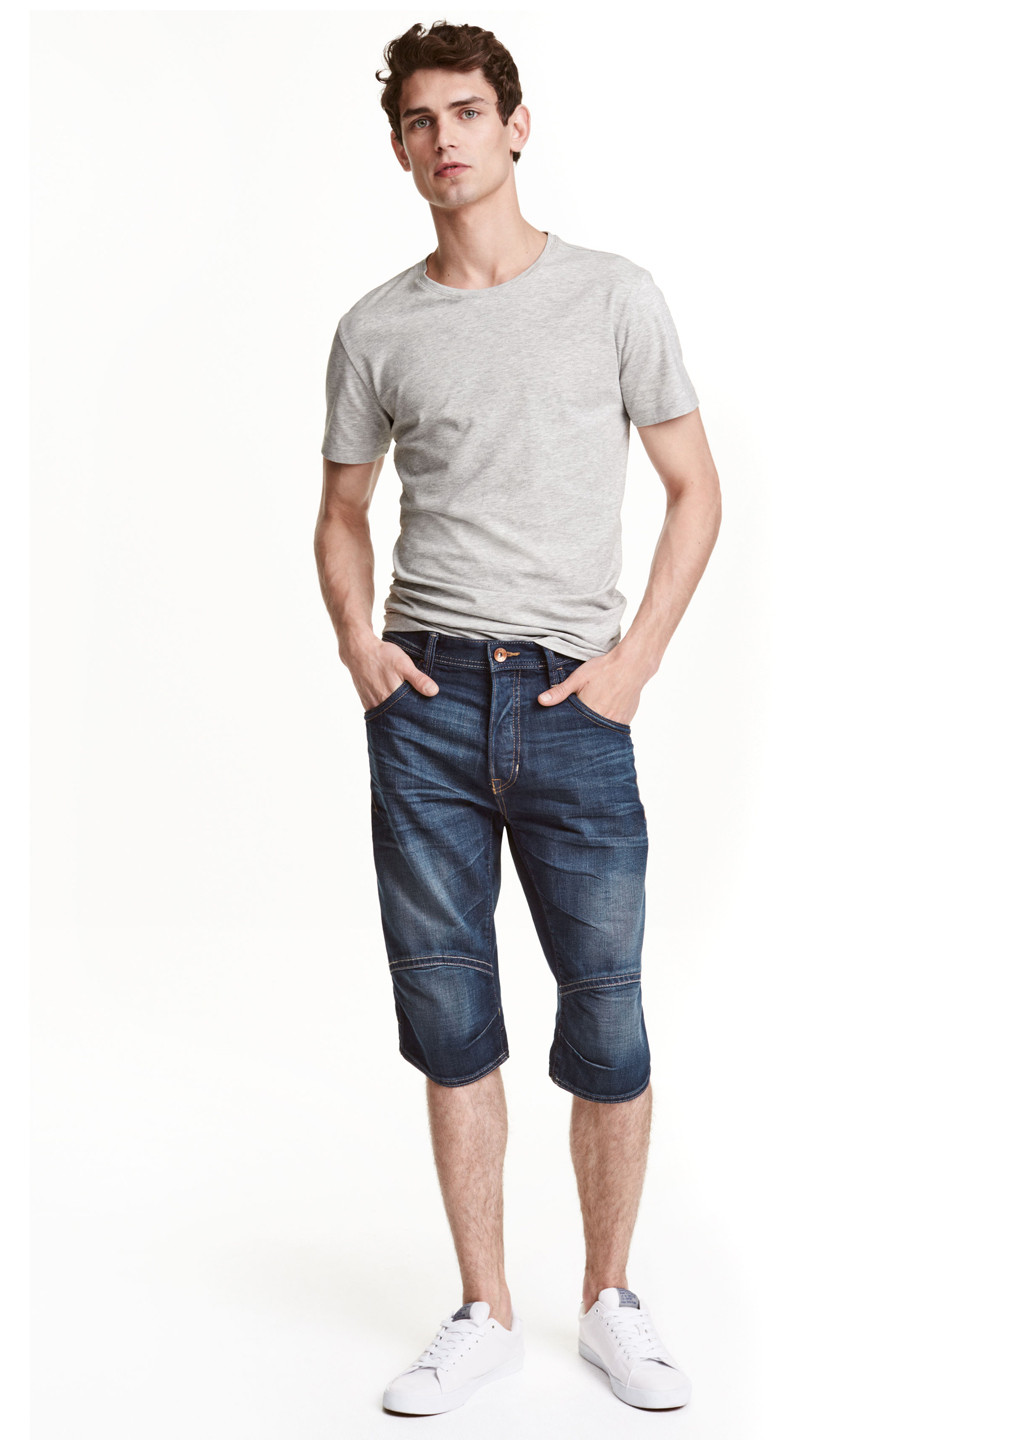 Шорты H&M комбинированные джинсовые